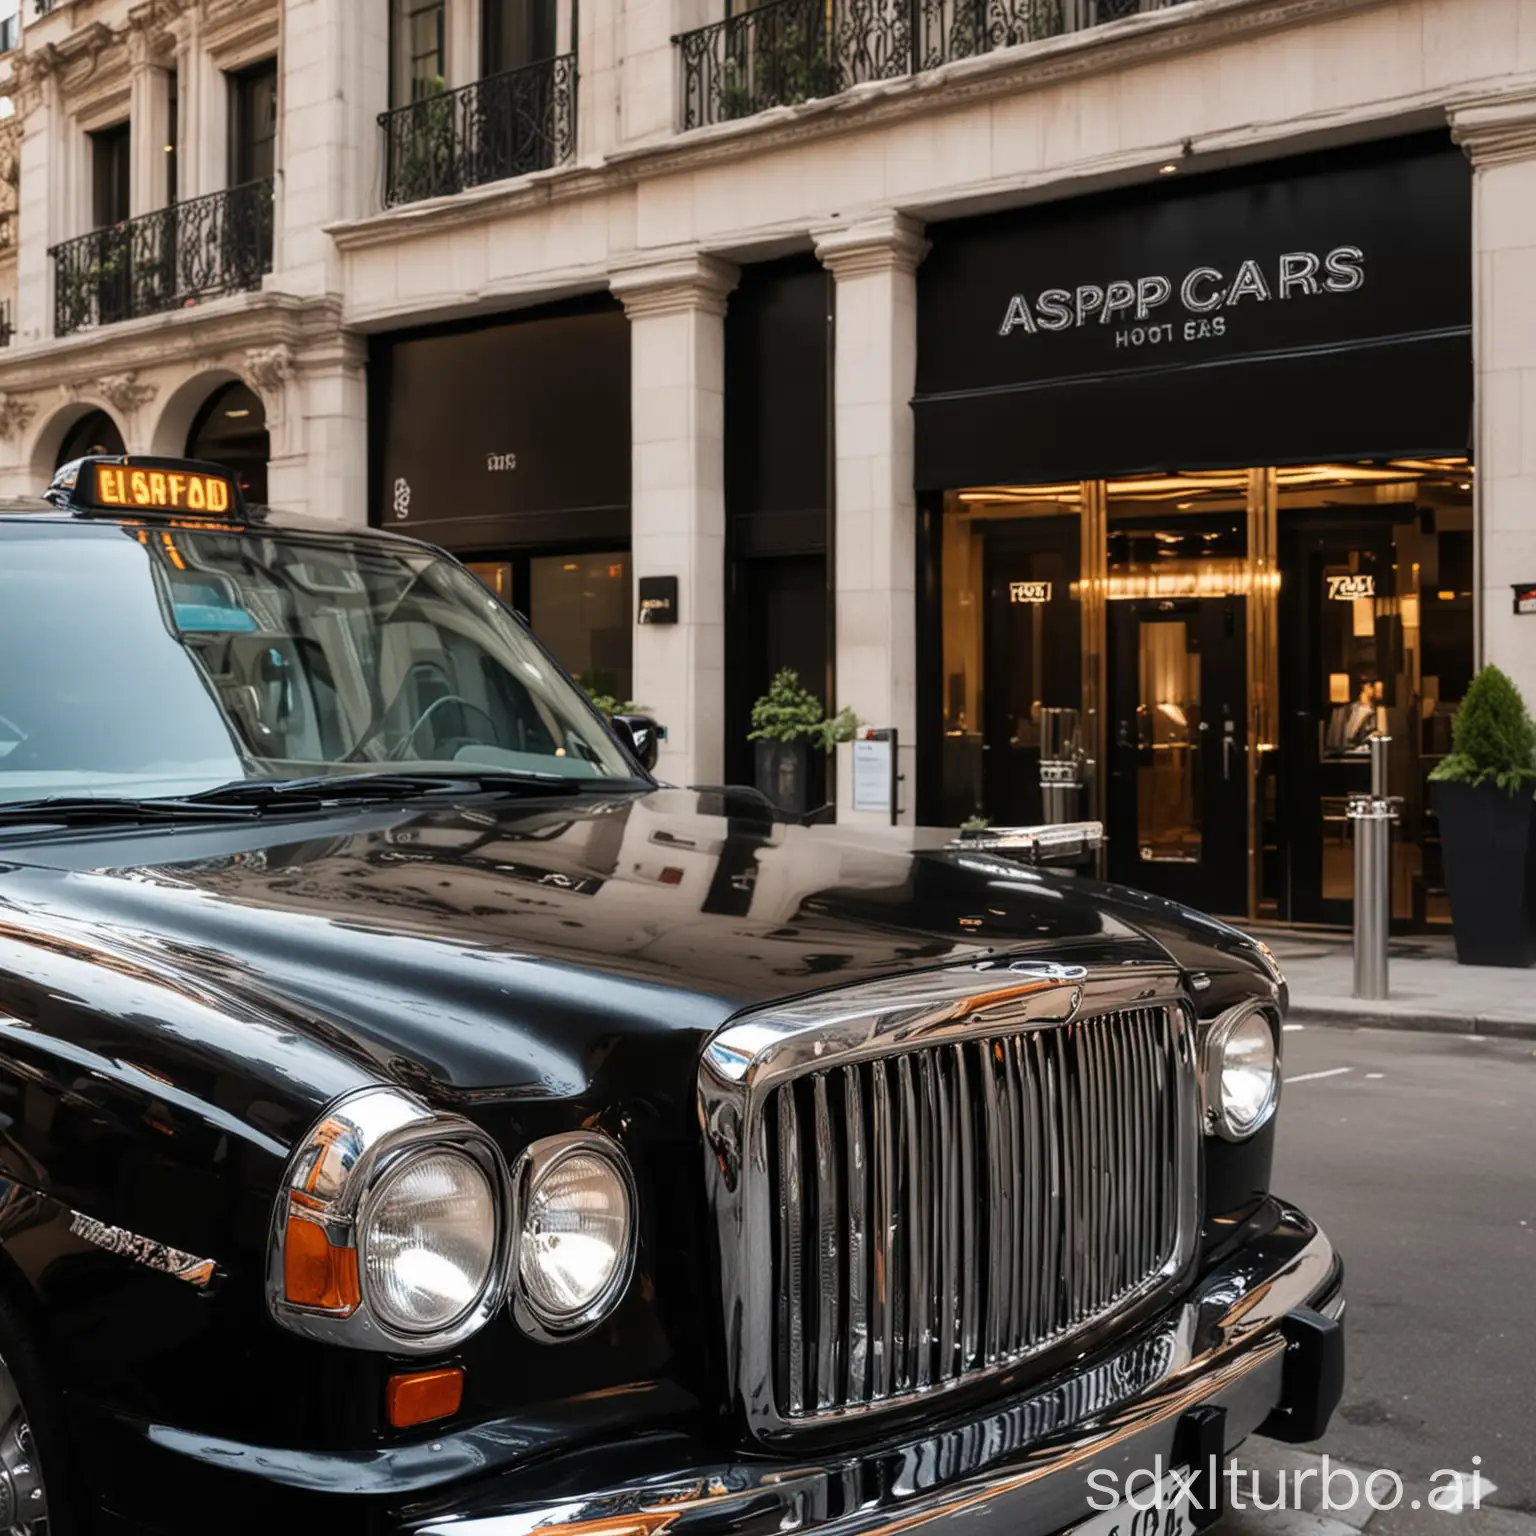 Luxurious-Hotel-Taxi-Clean-ASAP-CARS-Black-Cab